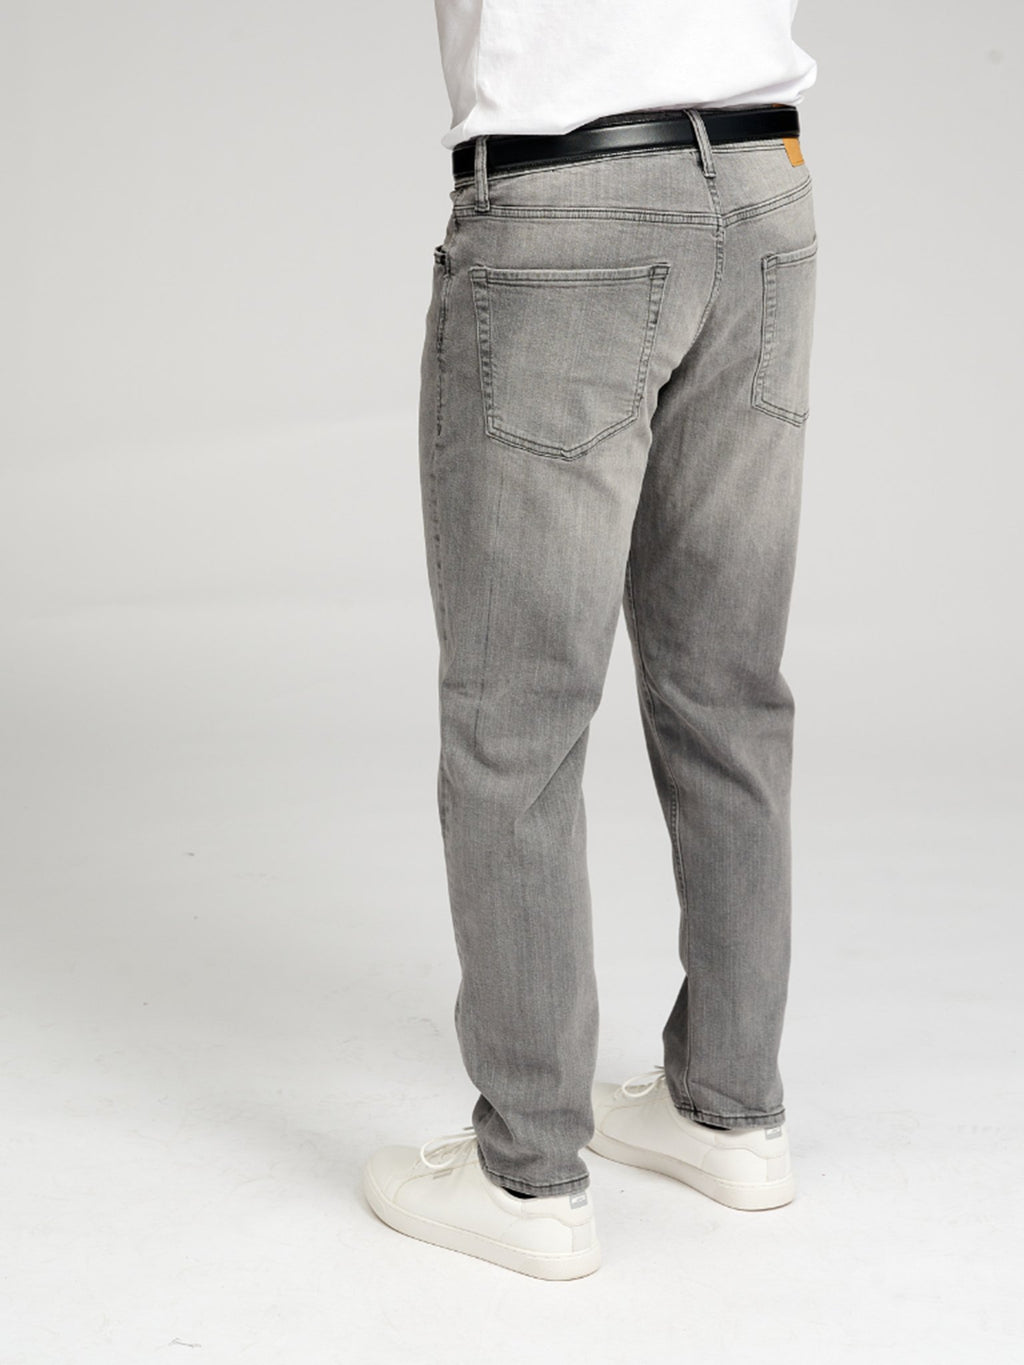 The Original Performance Jeans (regulär) - grauer Jeans